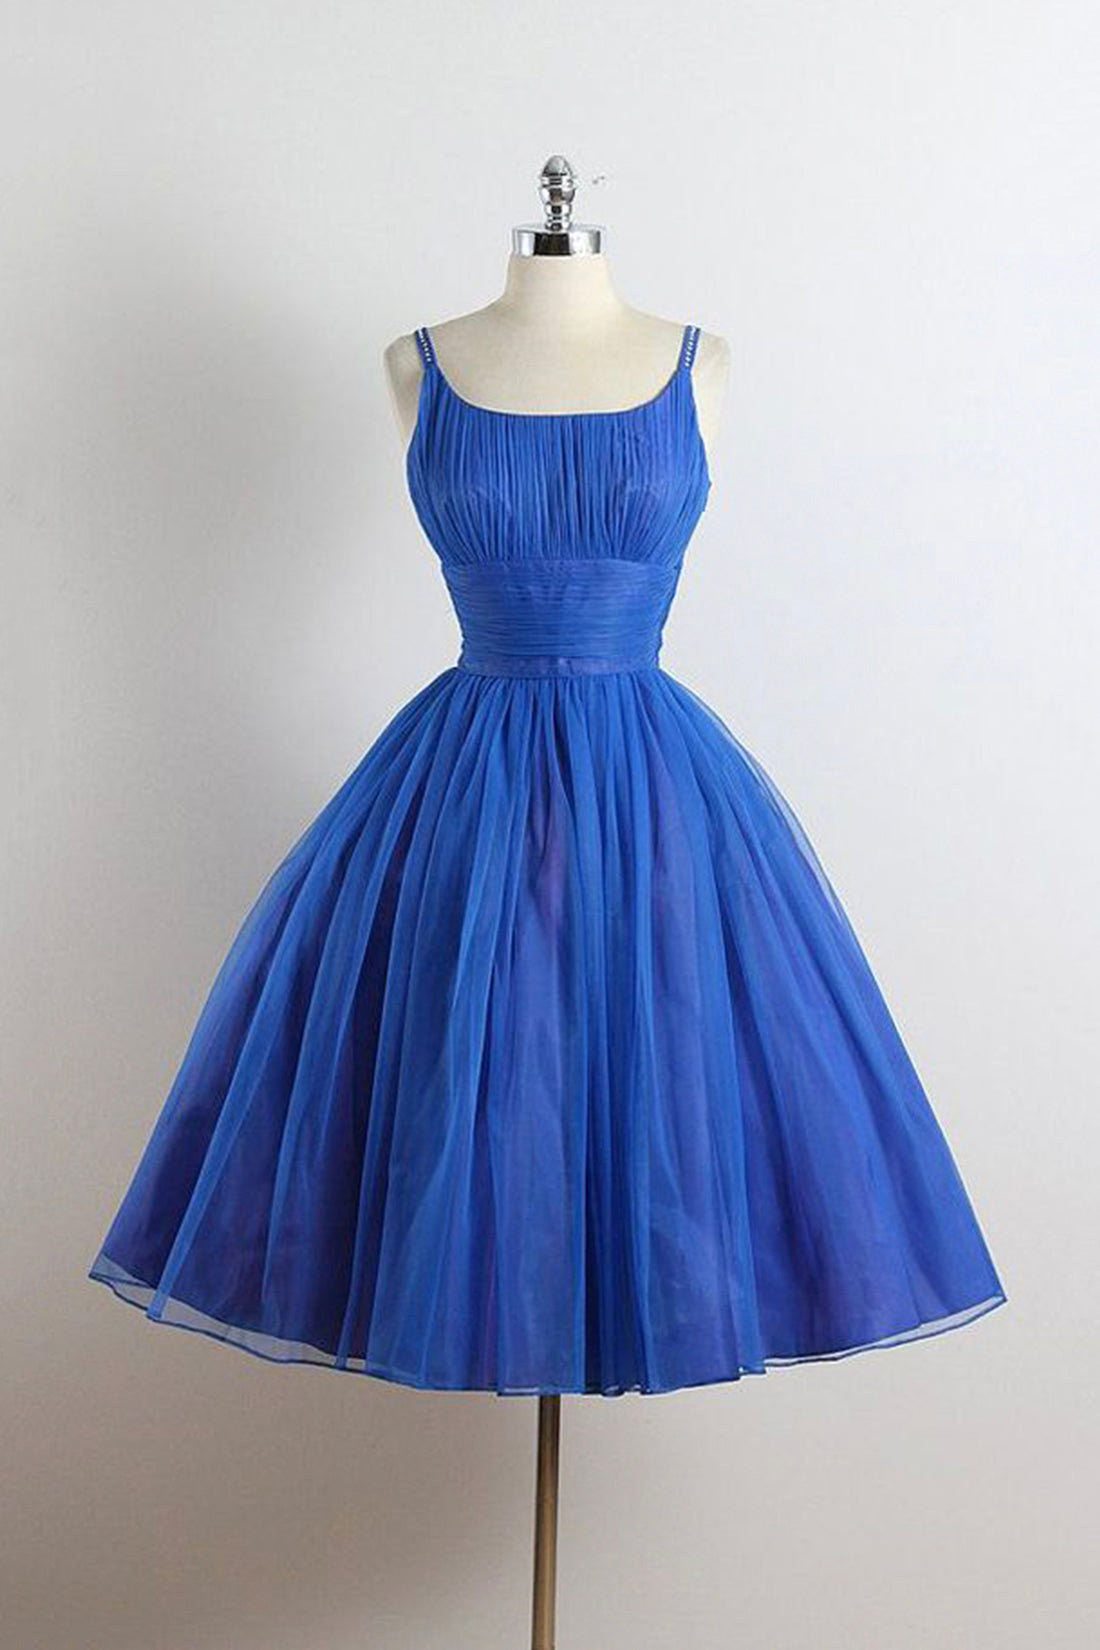 blue party dress